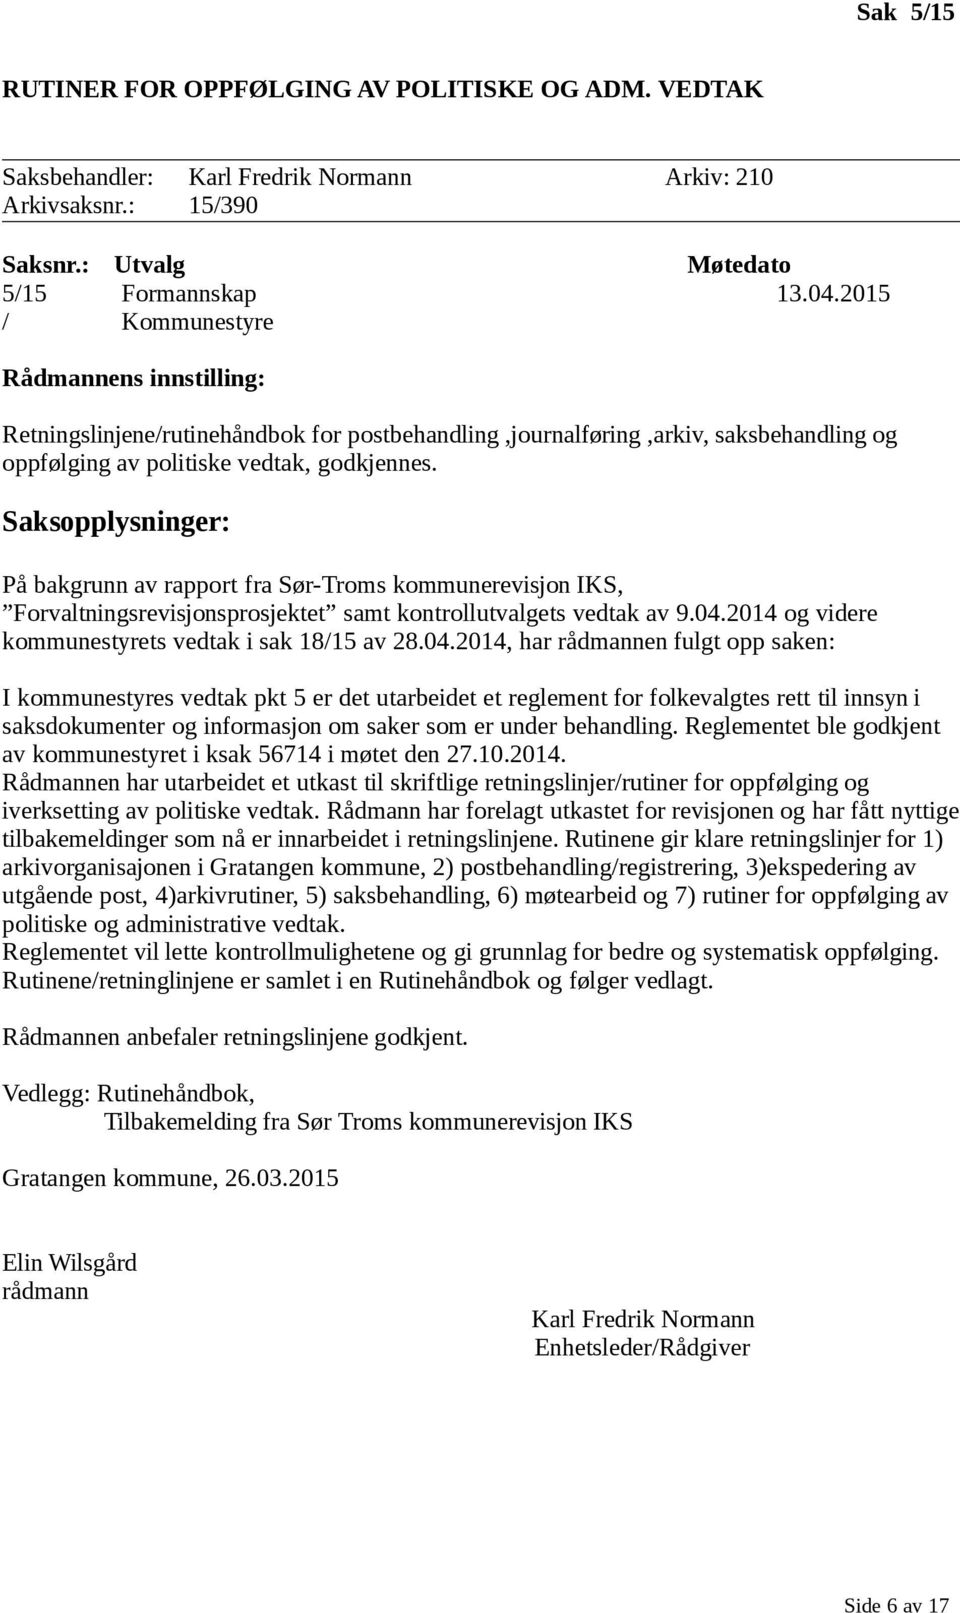 På bakgrunn av rapport fra Sør-Troms kommunerevisjon IKS, Forvaltningsrevisjonsprosjektet samt kontrollutvalgets vedtak av 9.04.